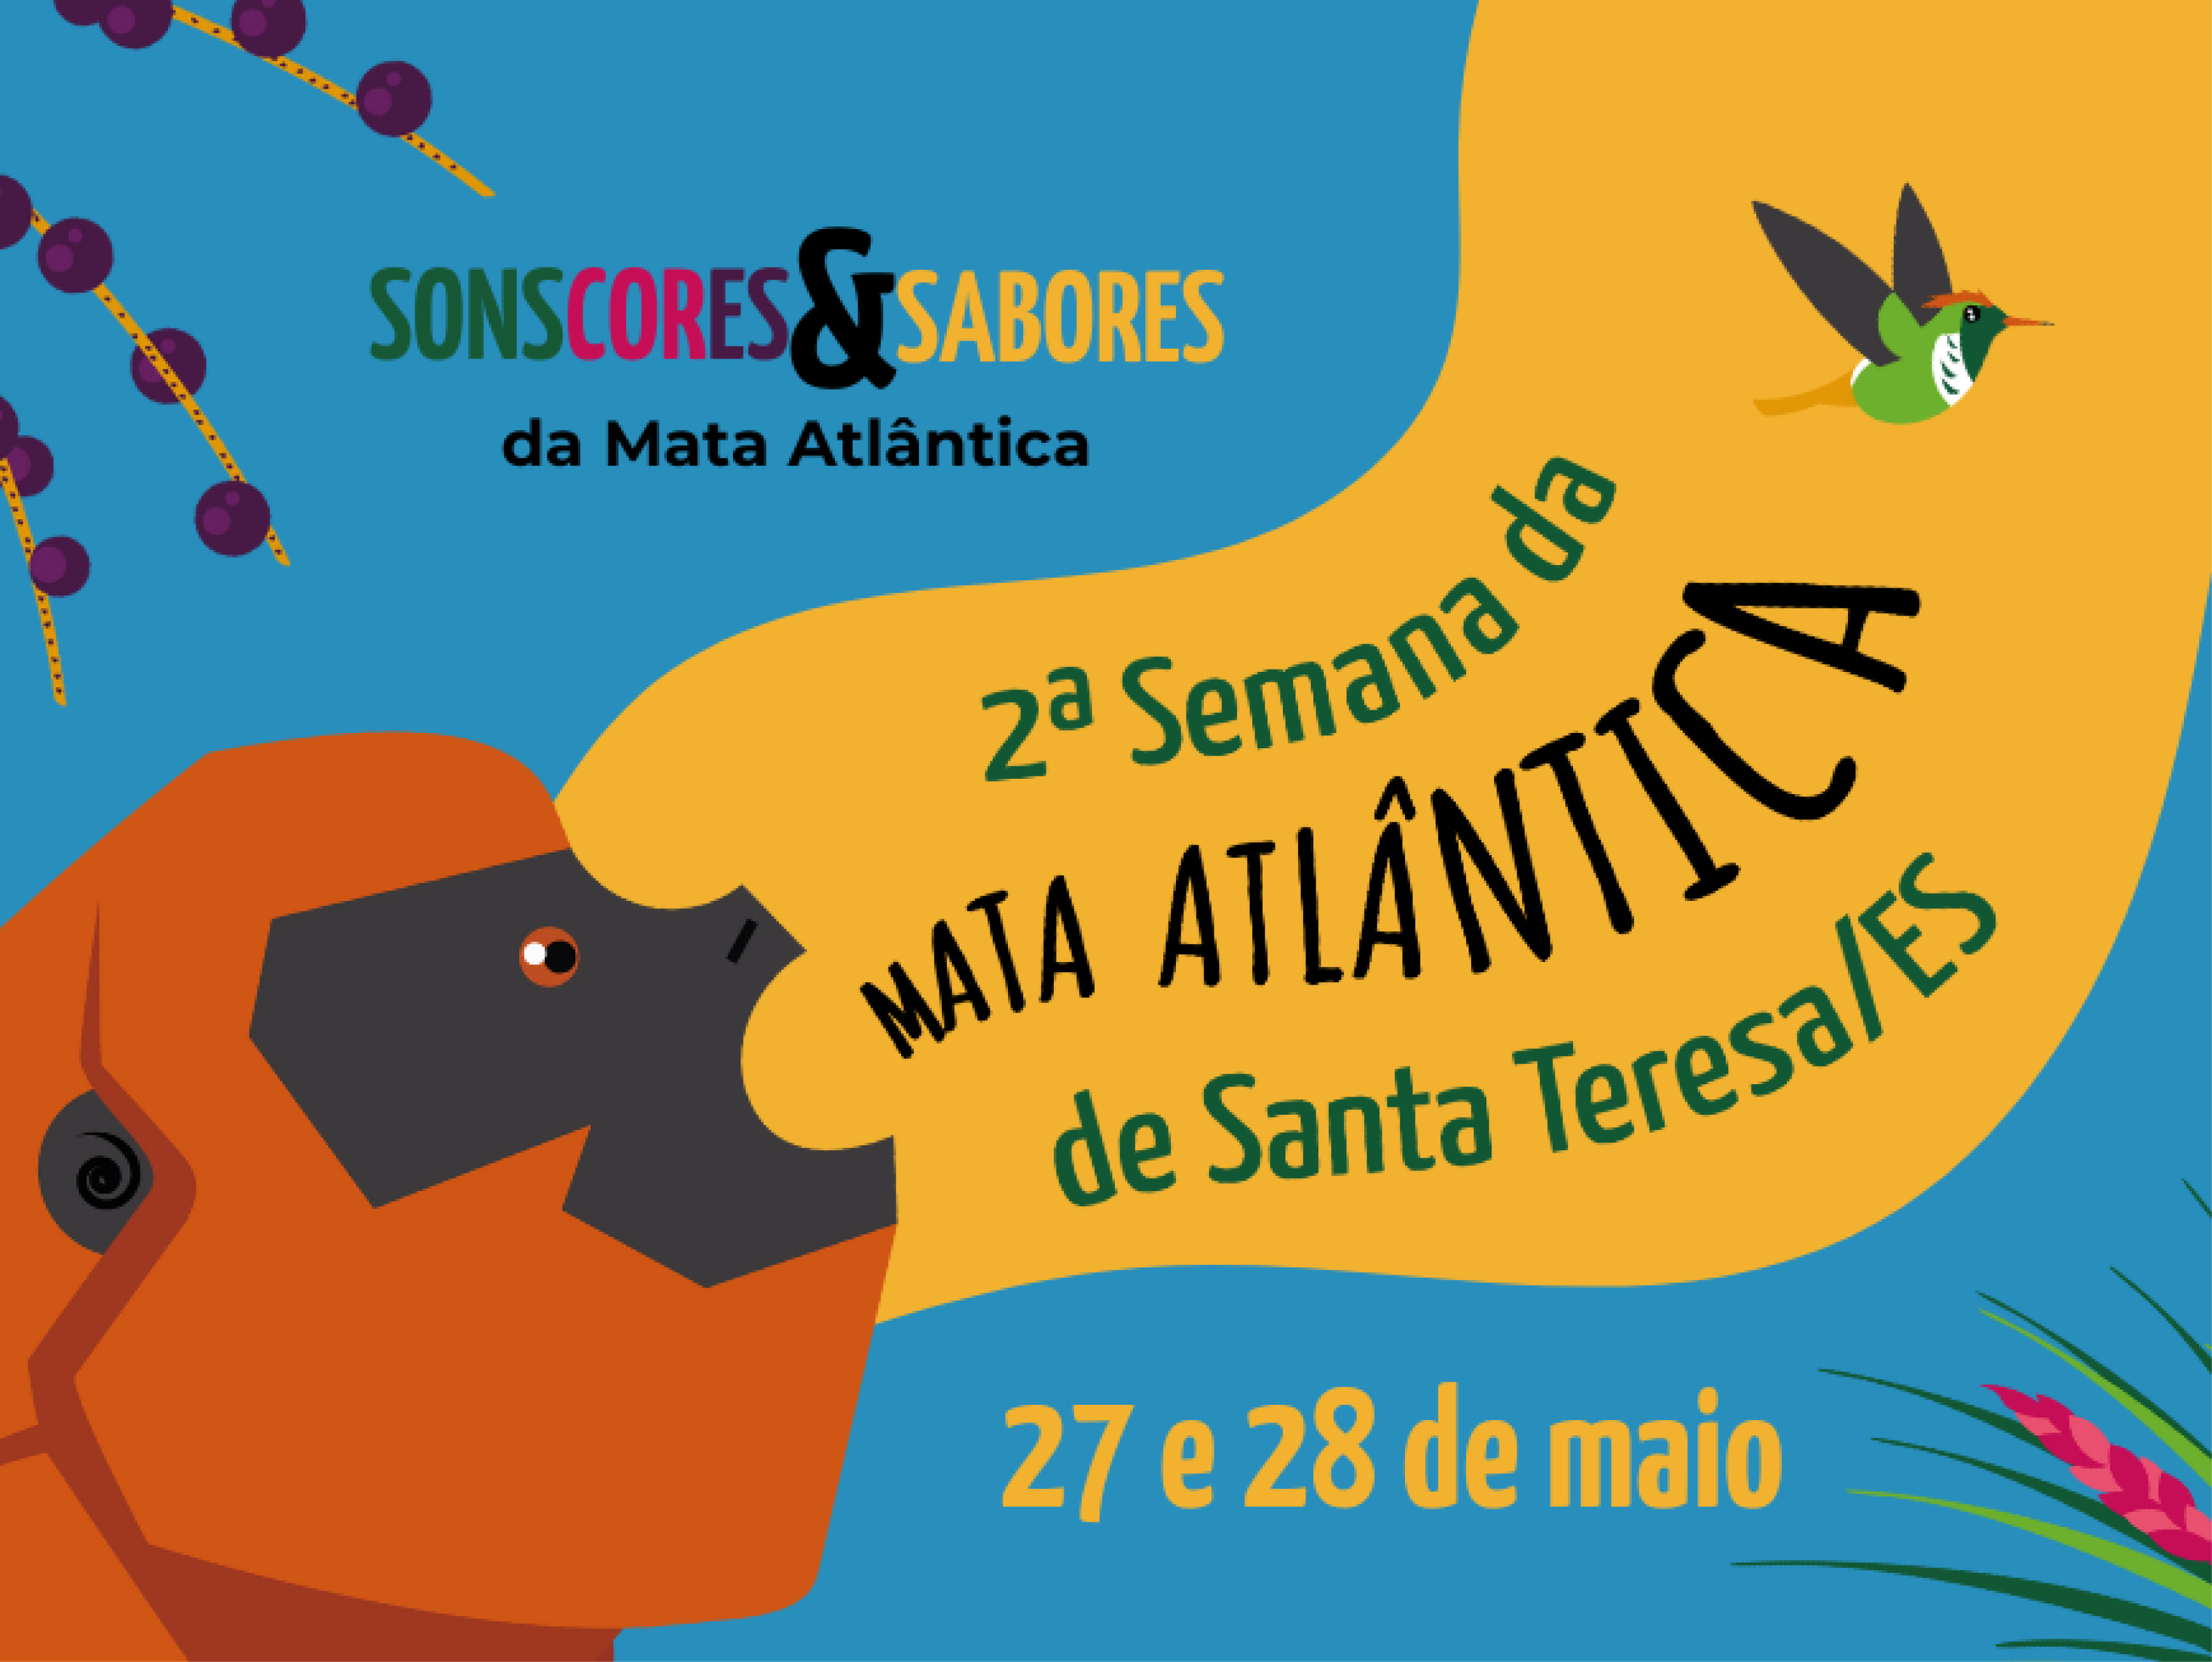 Circuito especial com tema “Sons, cores e sabores da Mata Atlântica” será oferecido no parque do Museu Mello Leitão